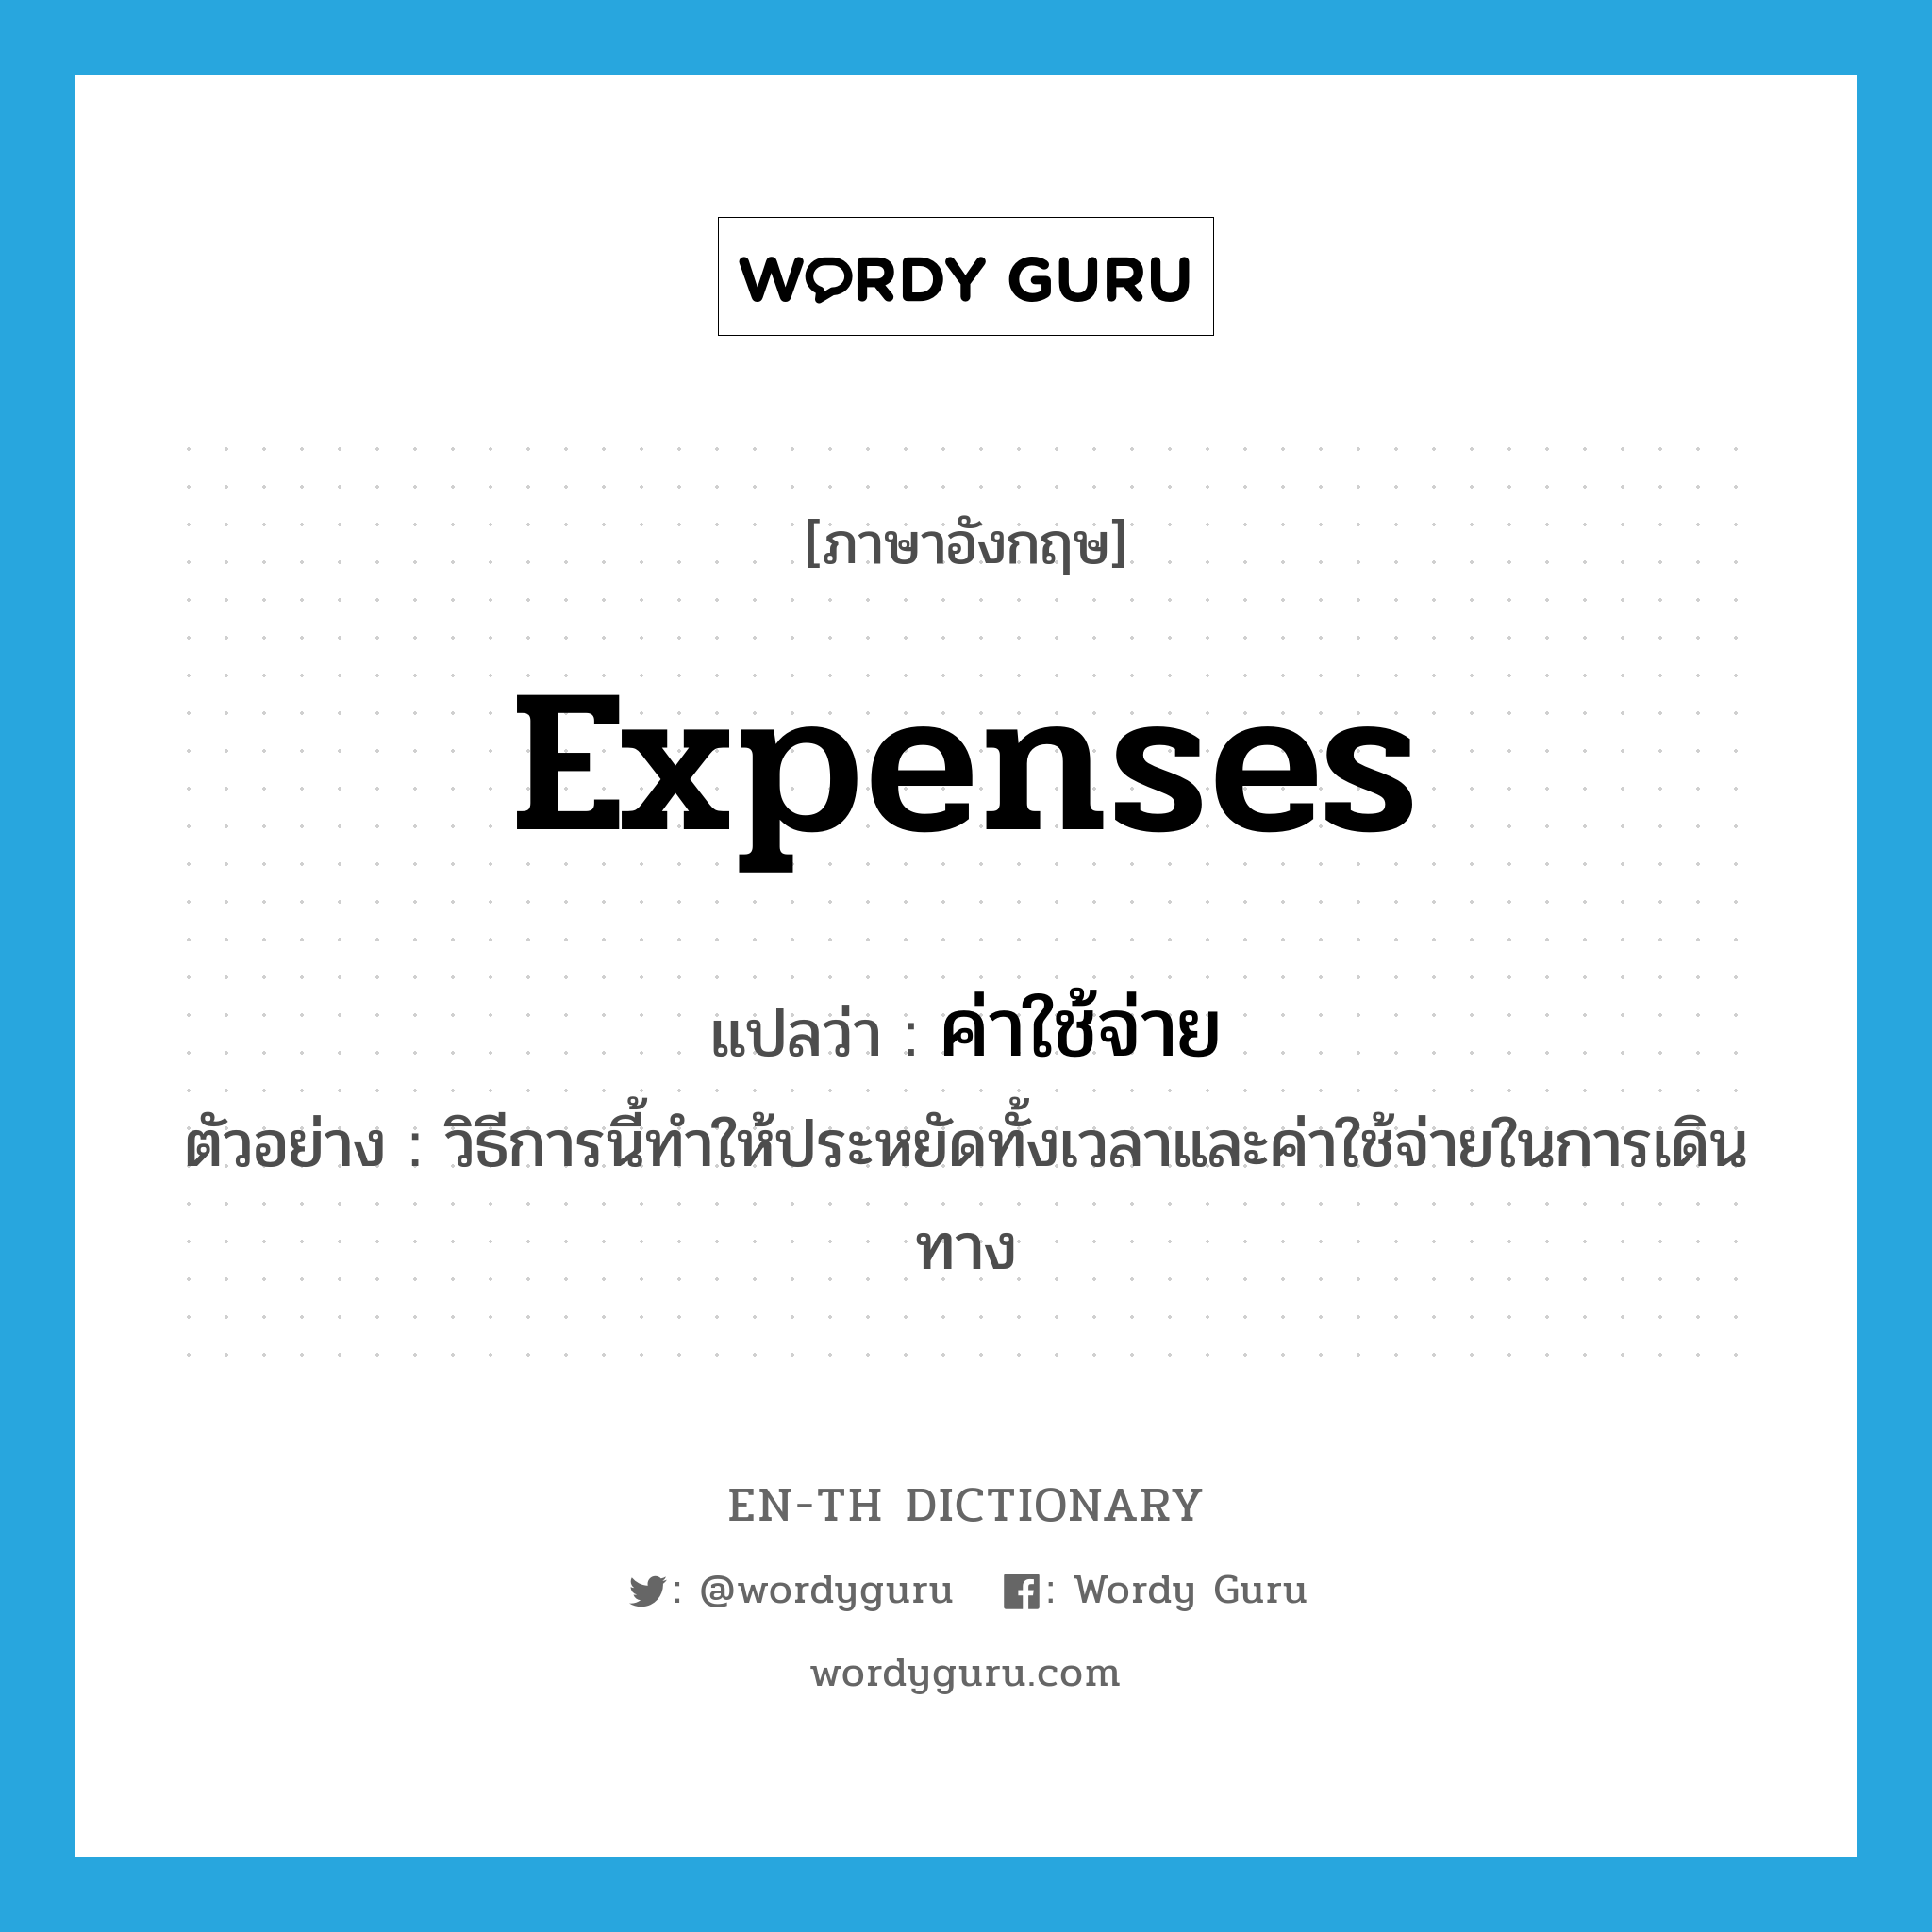 expenses แปลว่า?, คำศัพท์ภาษาอังกฤษ expenses แปลว่า ค่าใช้จ่าย ประเภท N ตัวอย่าง วิธีการนี้ทำให้ประหยัดทั้งเวลาและค่าใช้จ่ายในการเดินทาง หมวด N